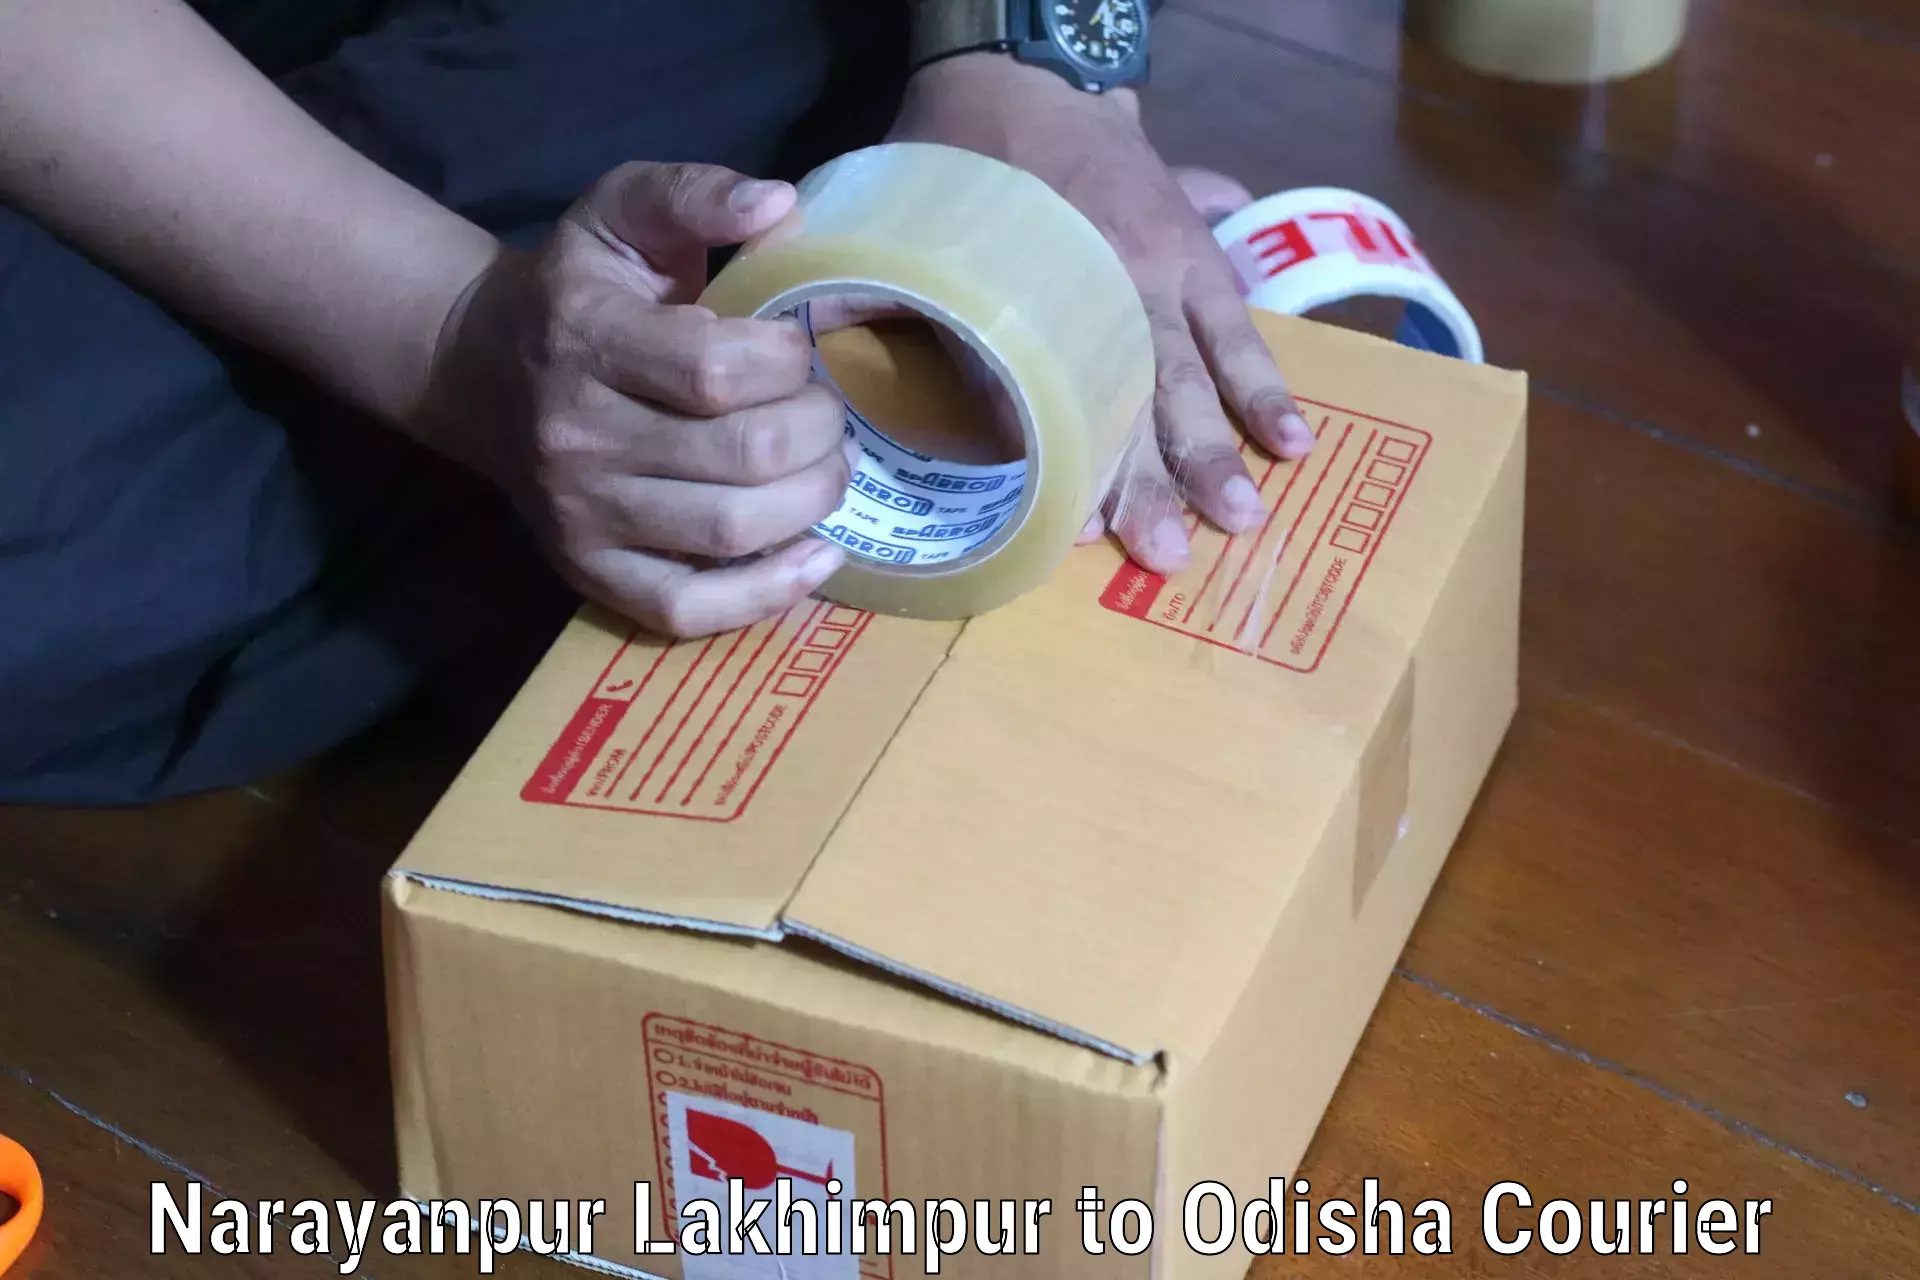 Premium courier solutions Narayanpur Lakhimpur to Kandhamal